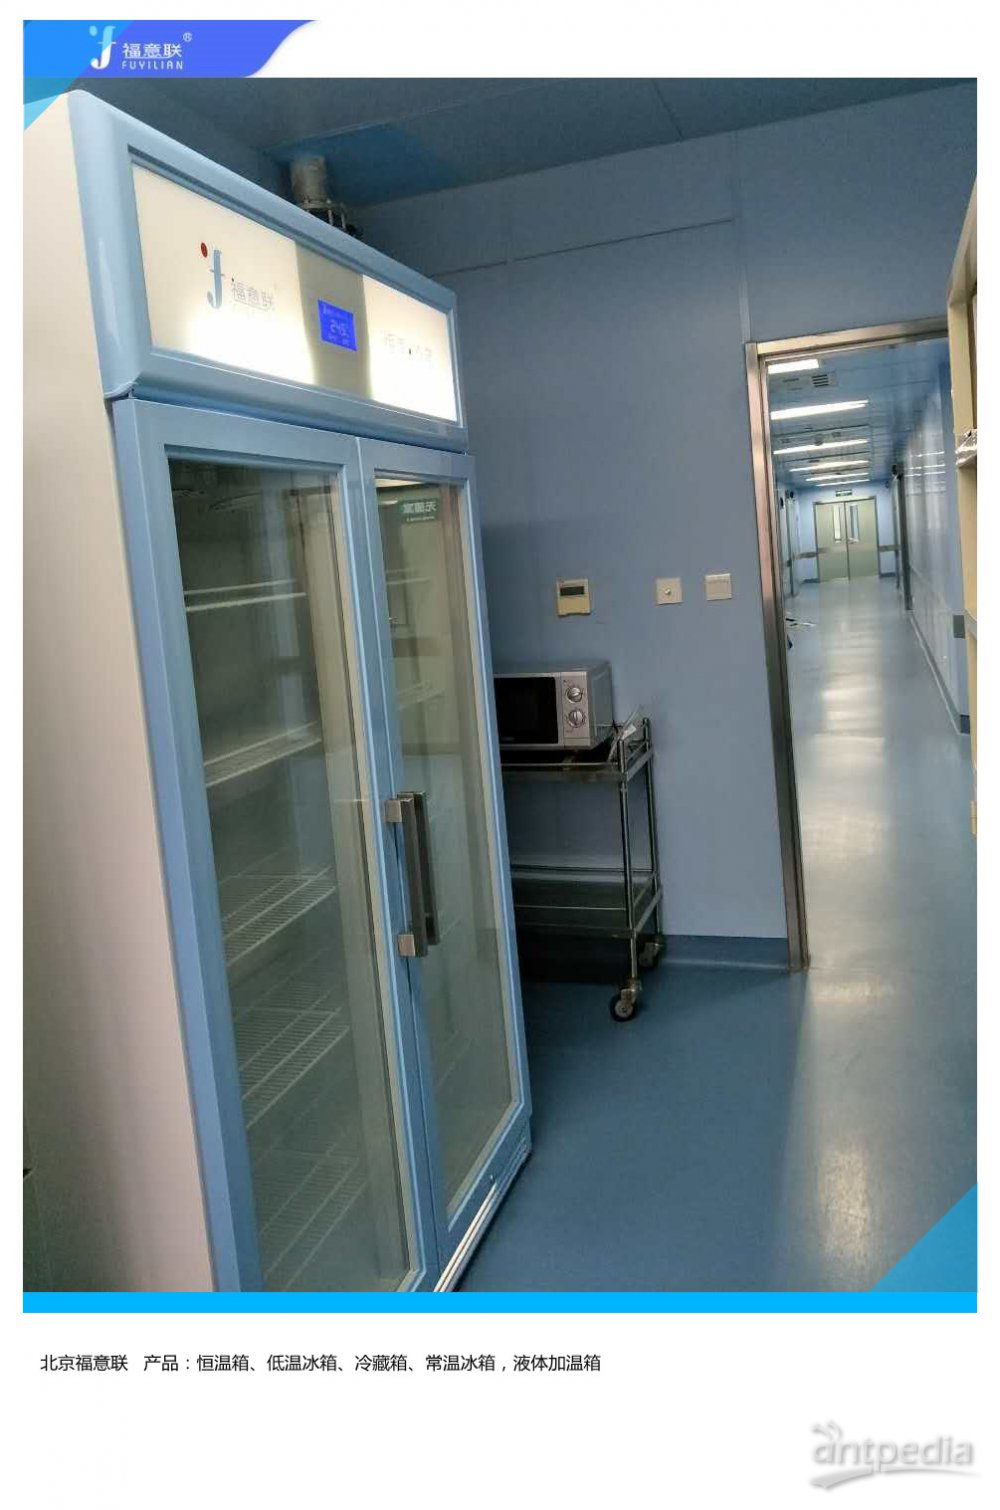 门急诊及医技业务用房建设项目低温冰箱